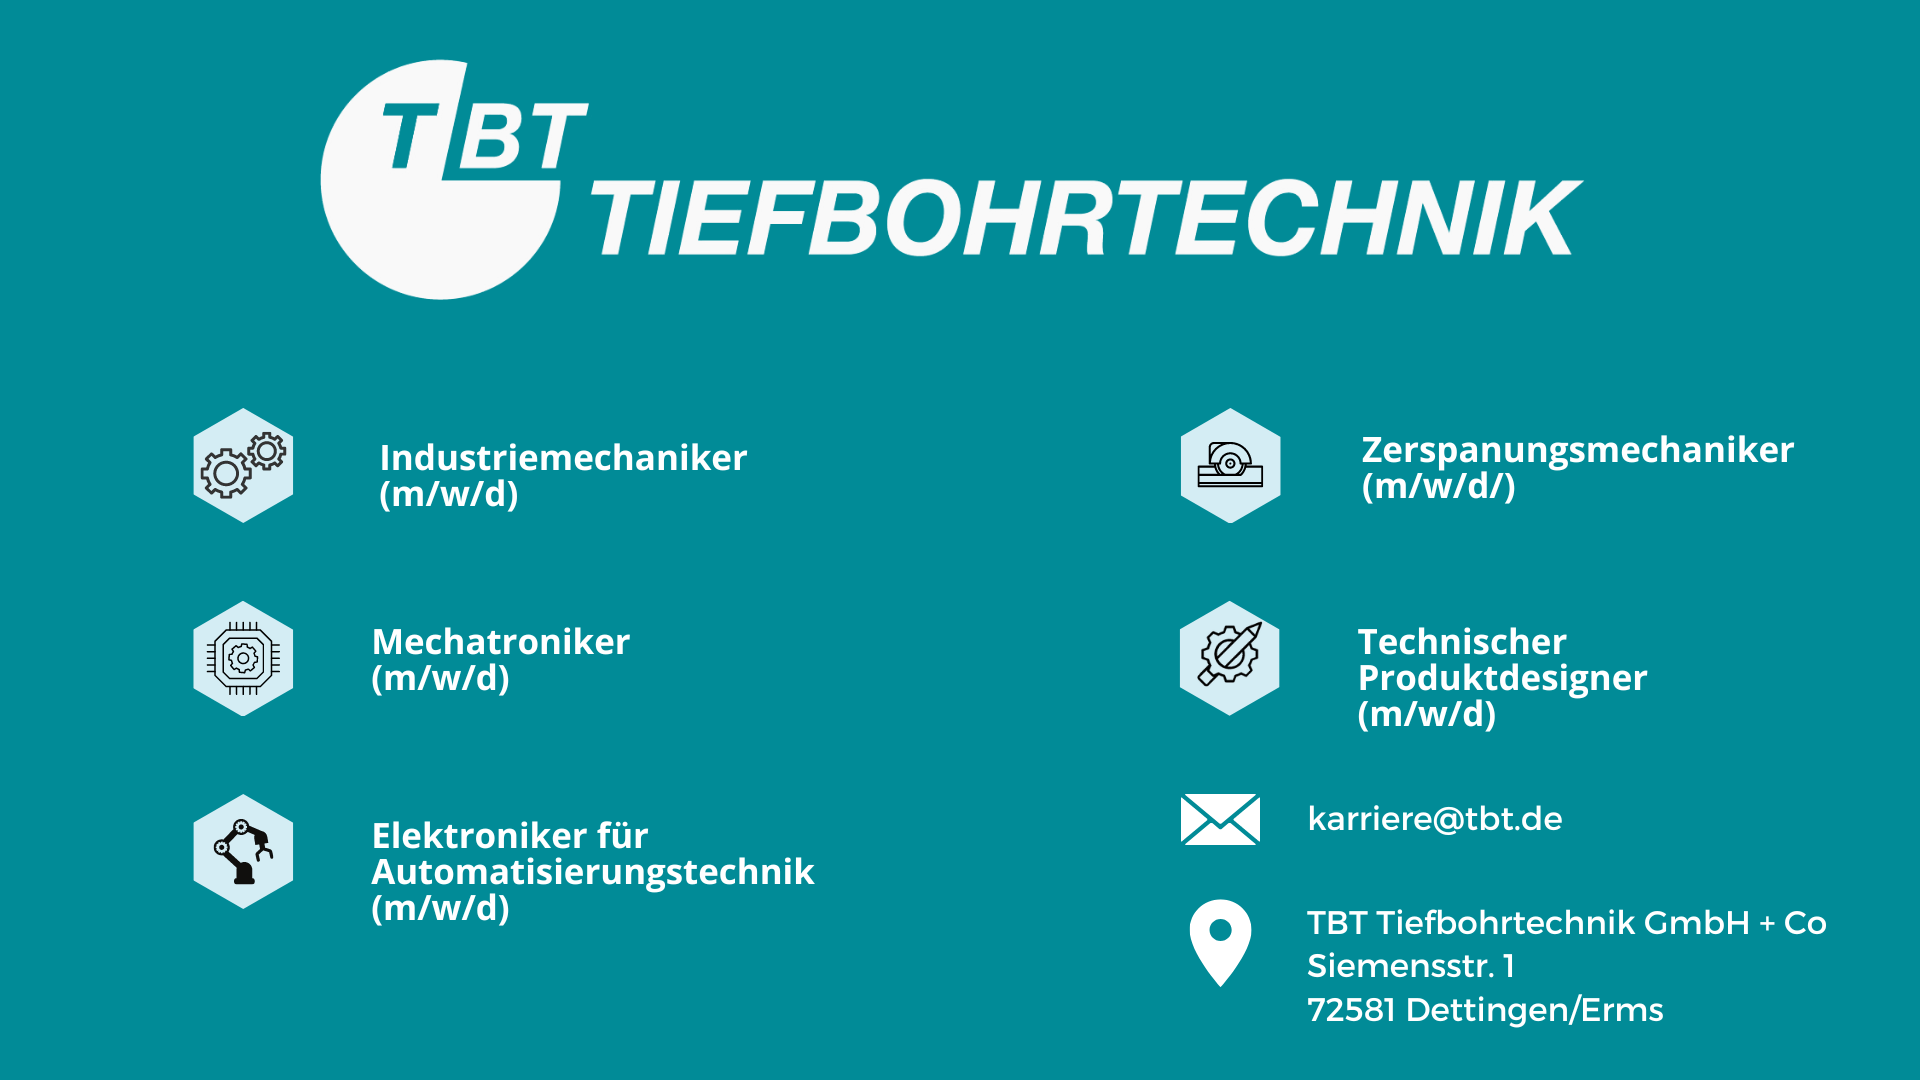 Industriemechaniker | TBT Tiefbohrtechnik GmbH + Co, Dettingen